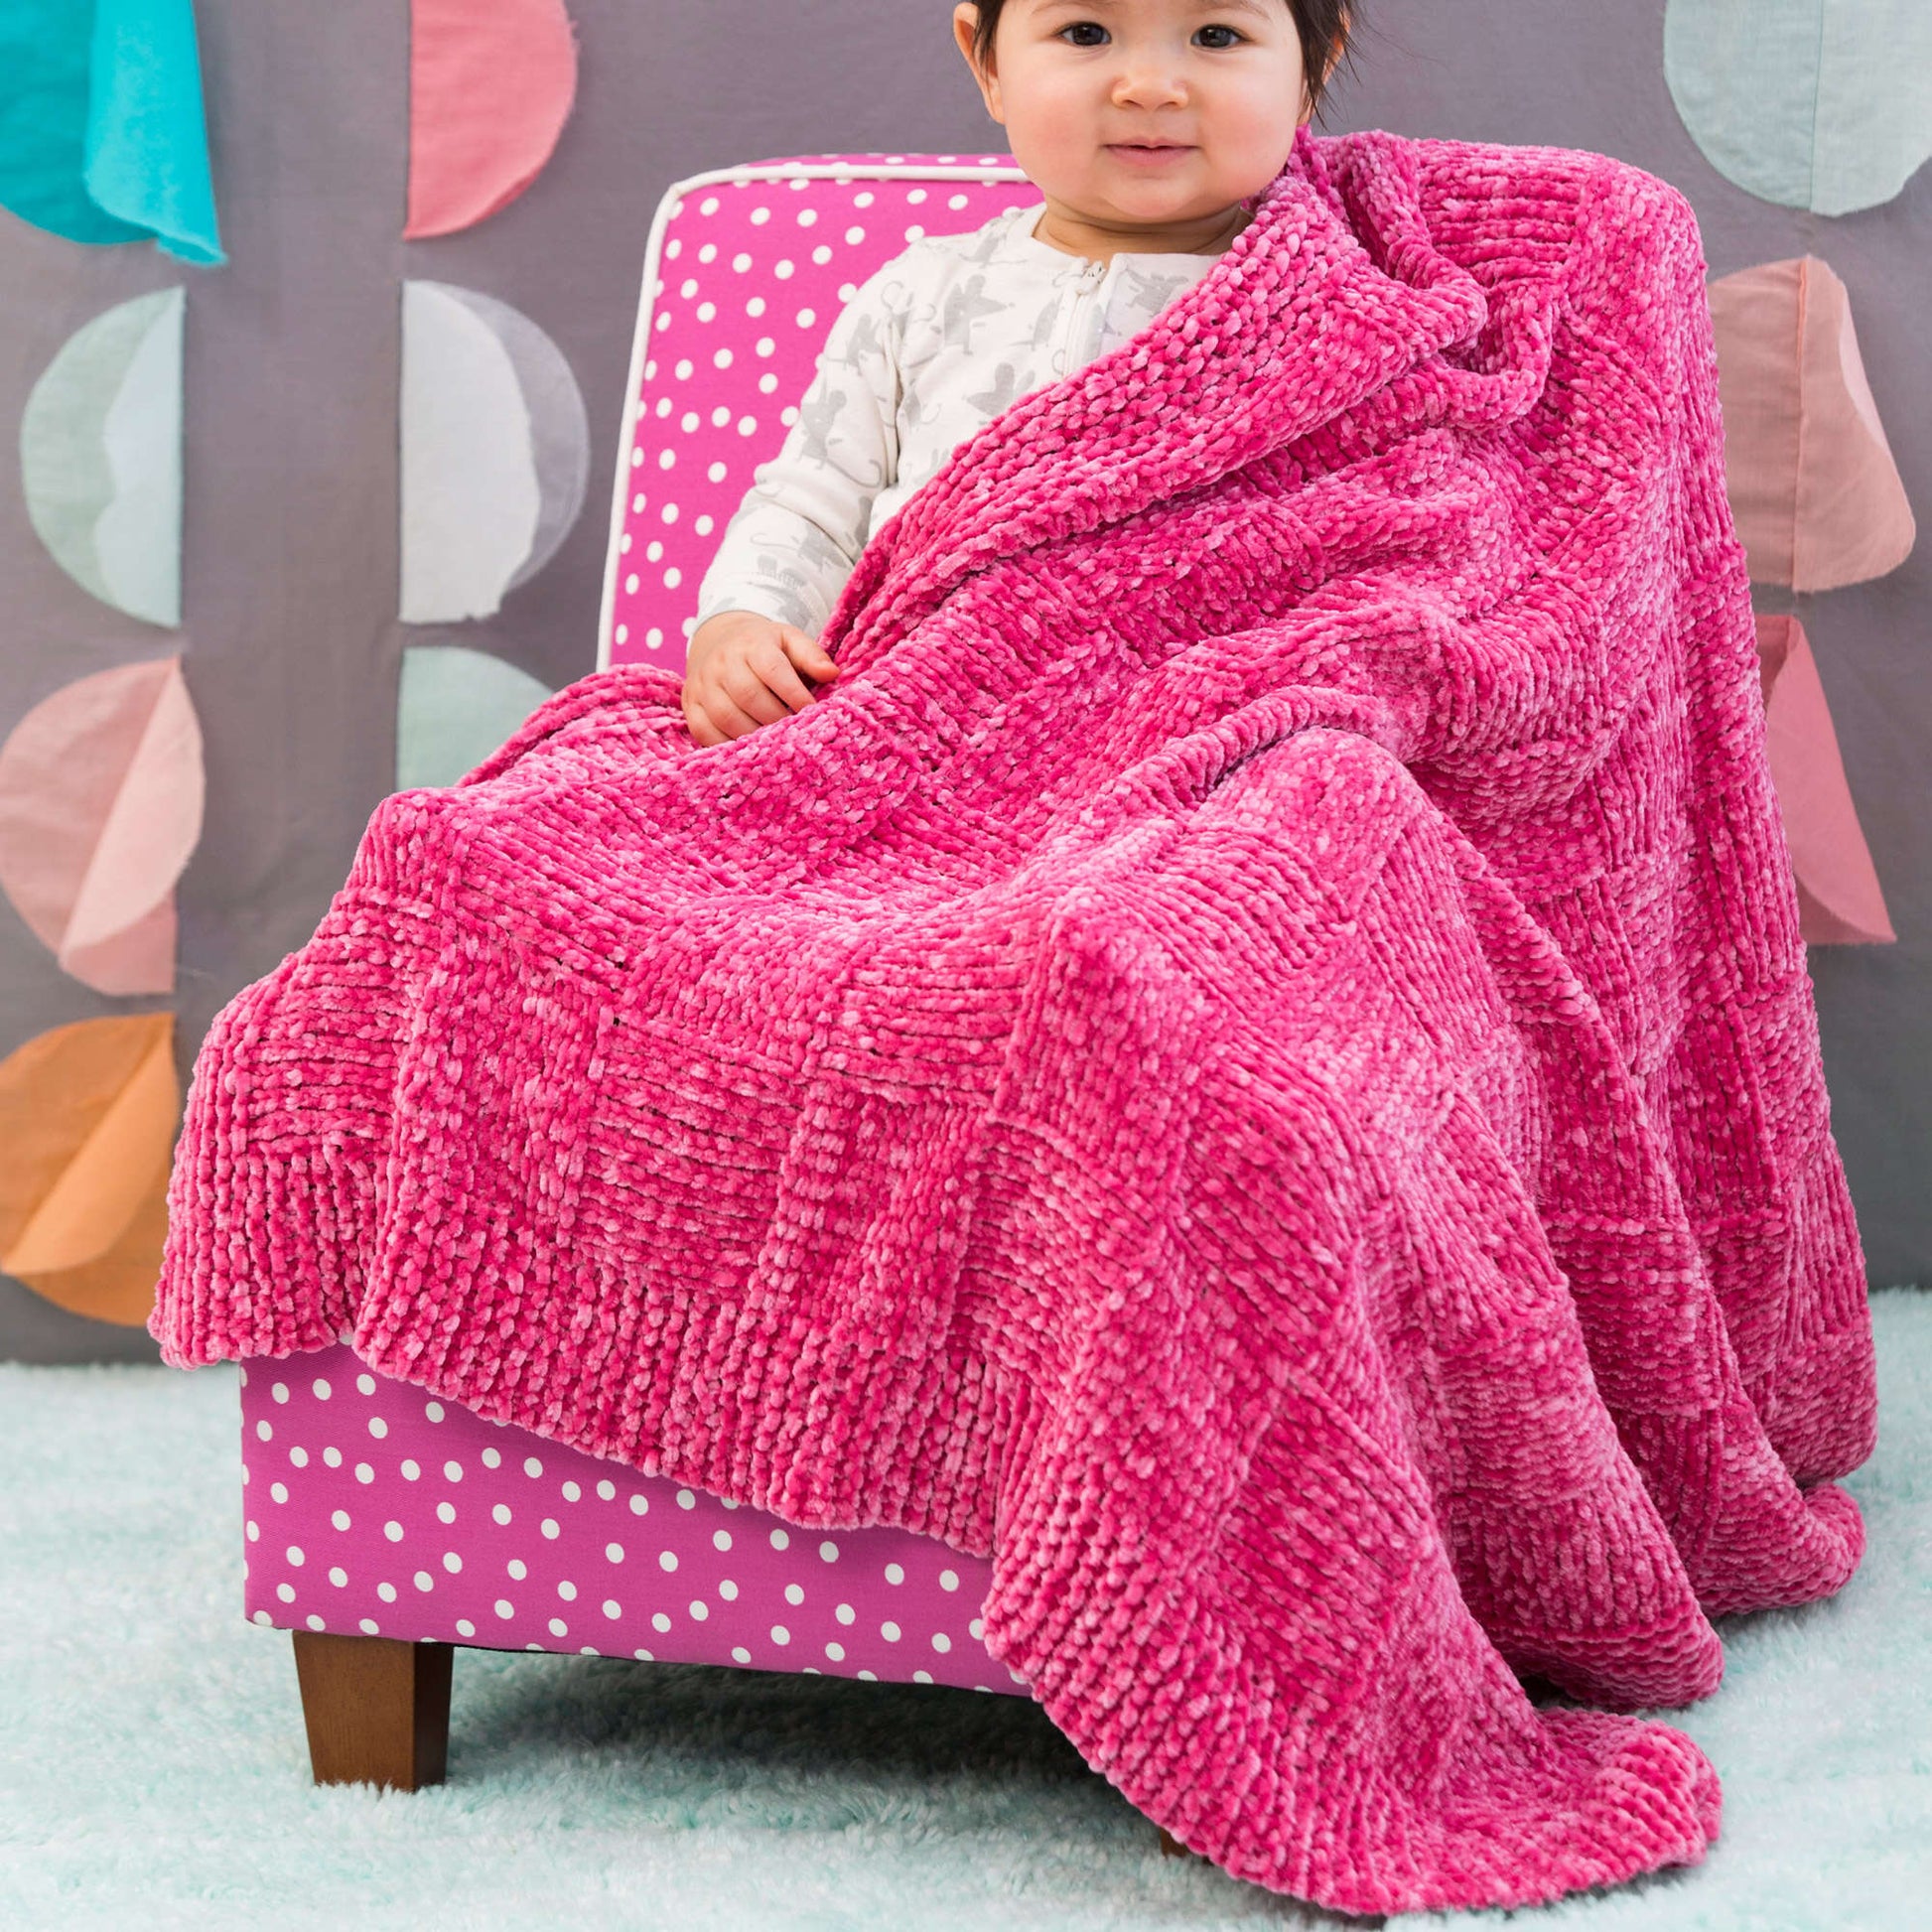 Simple Basketweave Baby Blanket